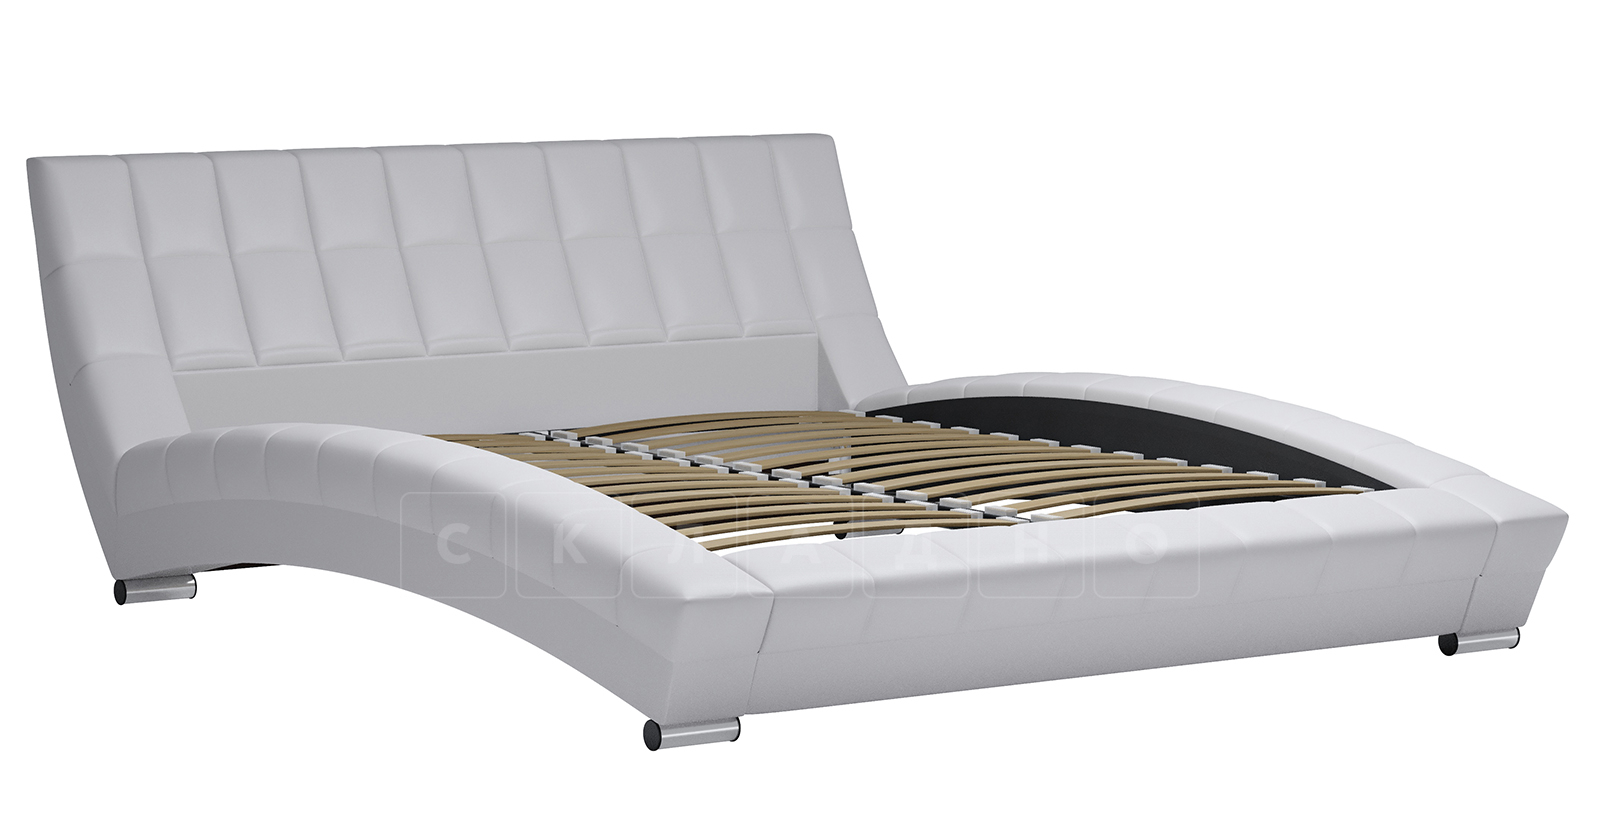 Мягкая кровать Оливия 160 см экокожа белый фото 2 | интернет-магазин Складно